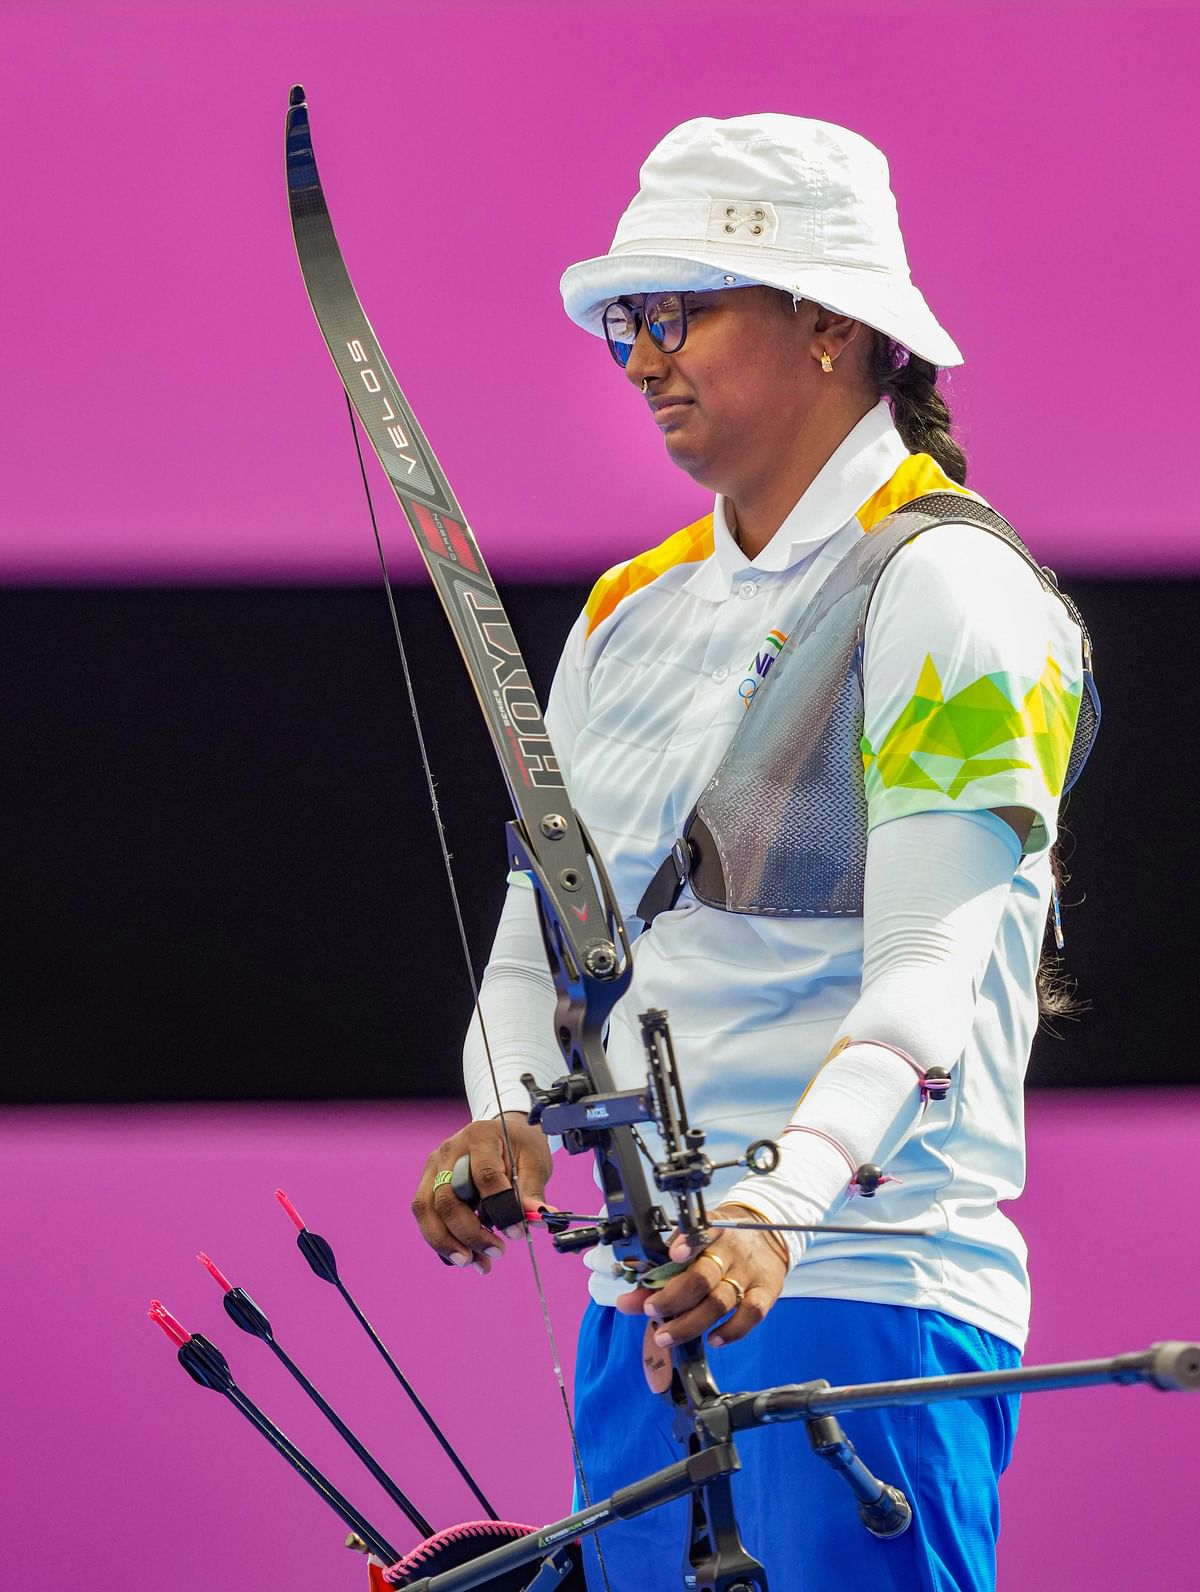 Tokyo Olympics: तीरंदाजी में मेडल की दावेदार दीपिका कुमारी को क्वार्टर फाइनल में हार का सामना करना पड़ा 